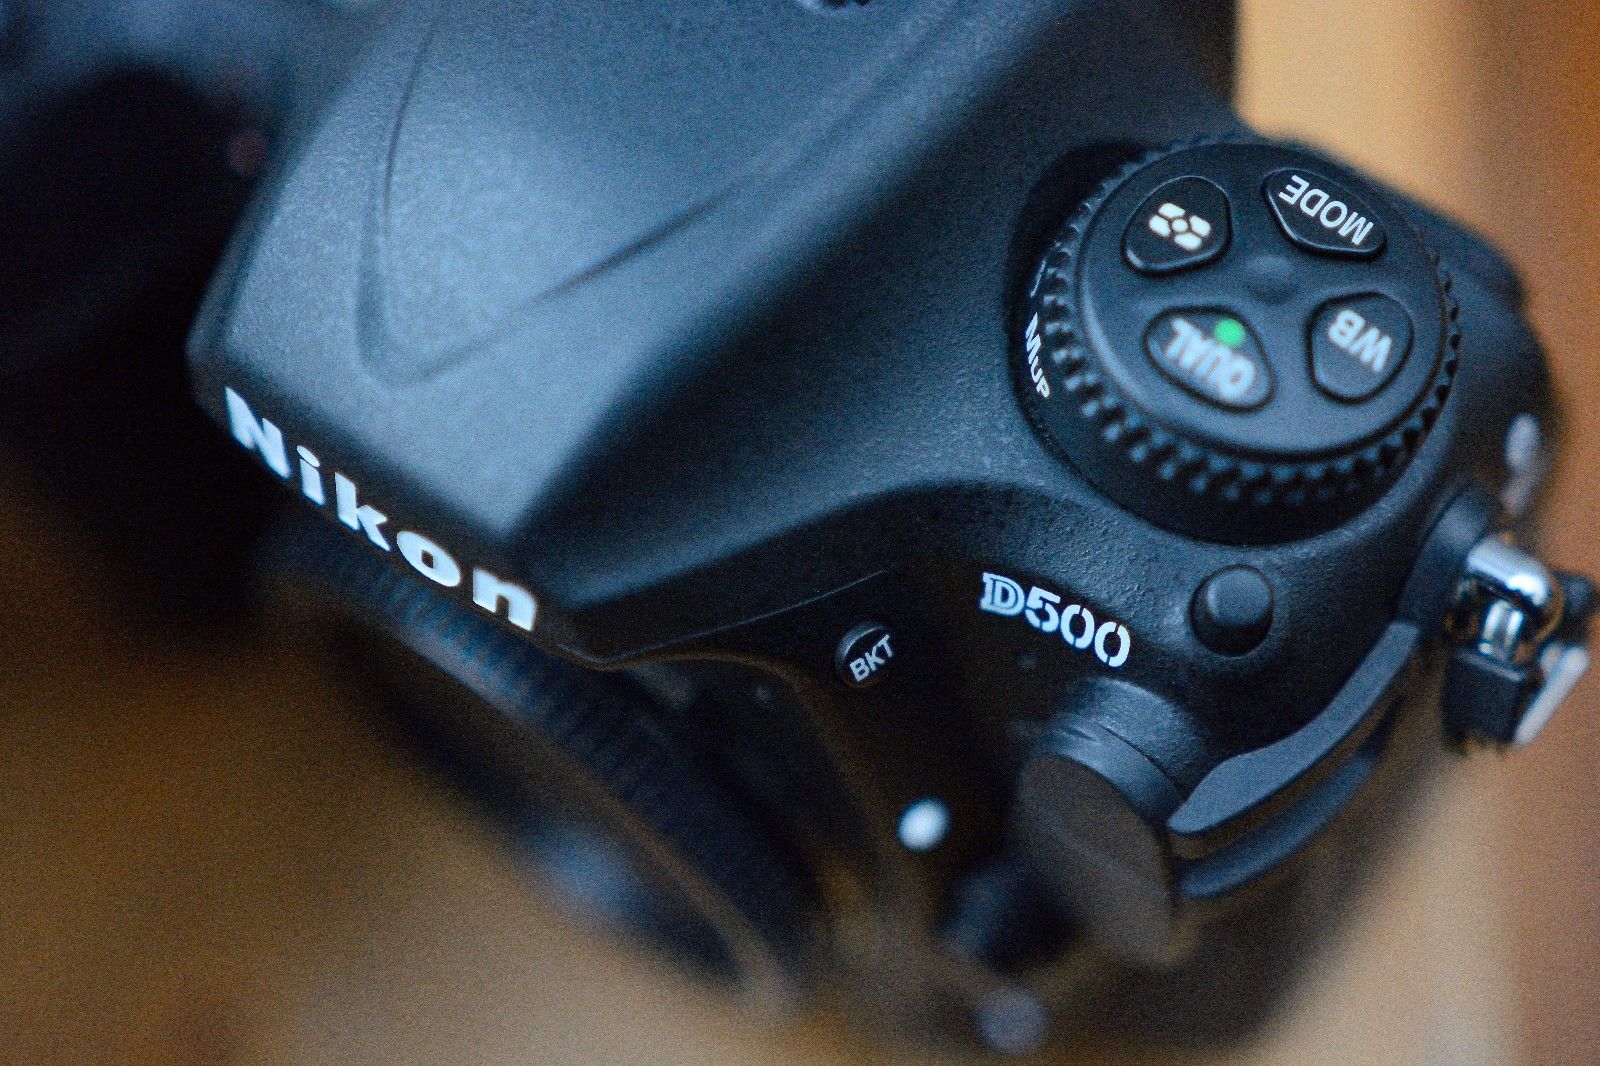 Nikon D500 Digitalkamera (Gehäuse), gebraucht, 5800 Auslösungen, super Zustand